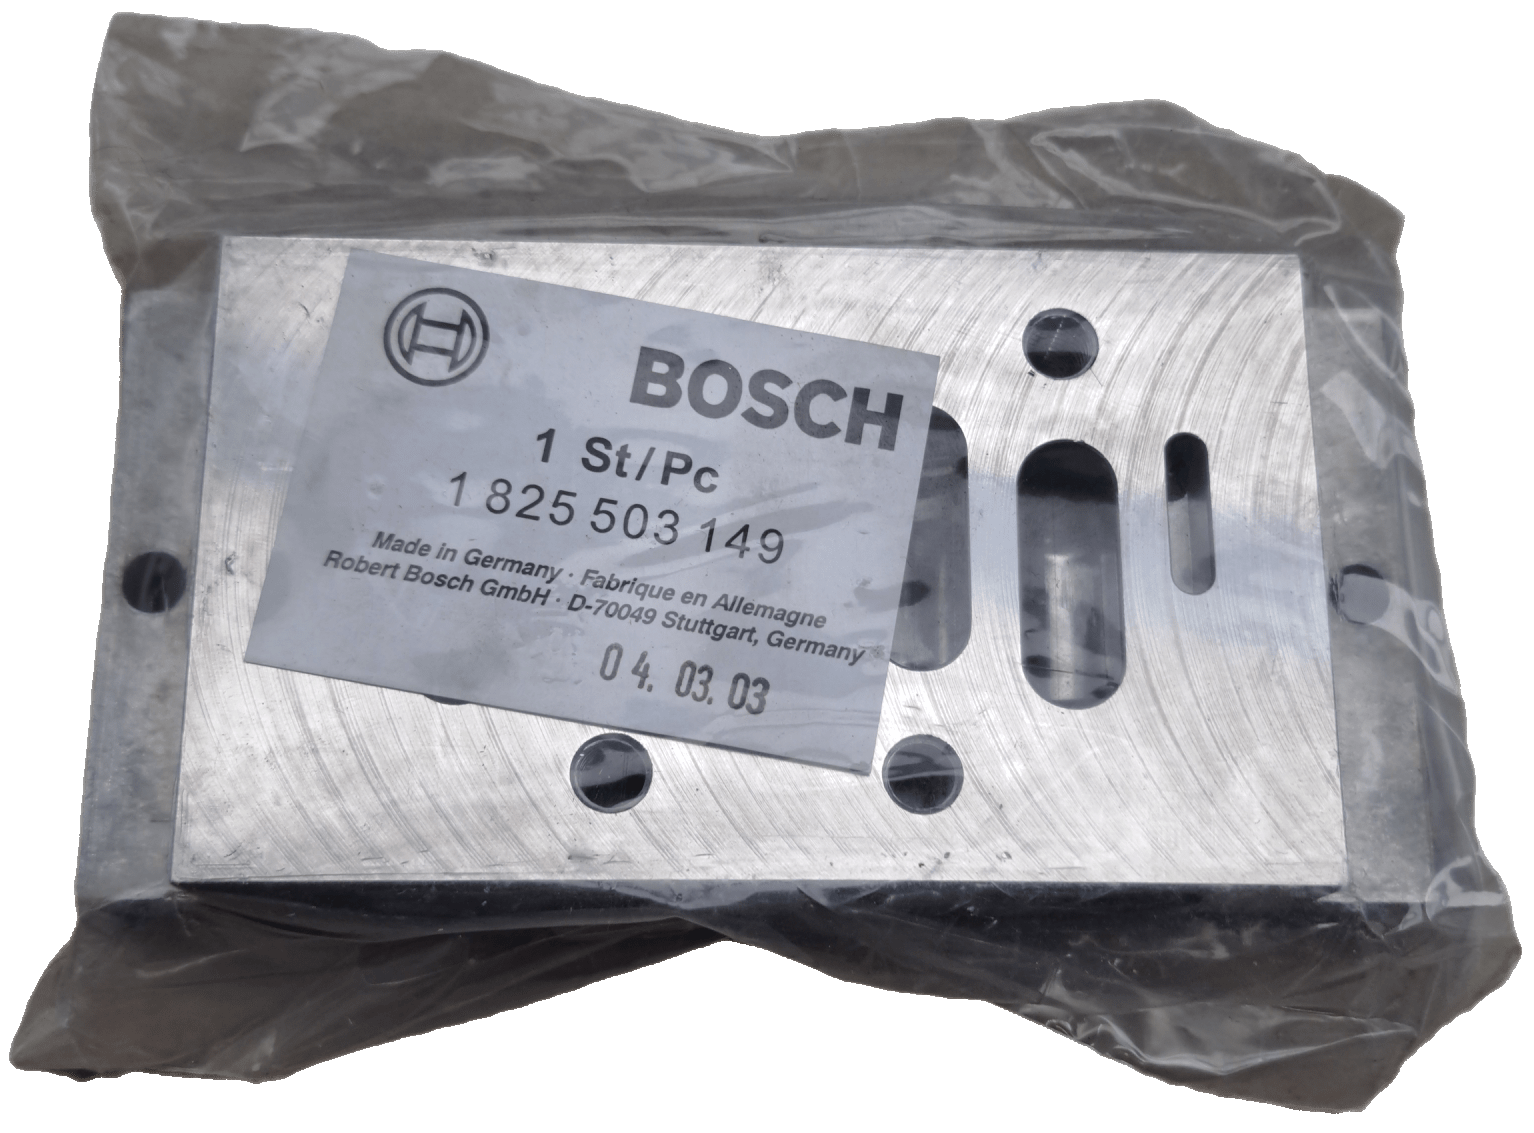 Bosch / Aventics Einzelanschlussplatte, Gewindeanschlüsse seitlich / 1825503149 - #product_category# | Klenk Maschinenhandel